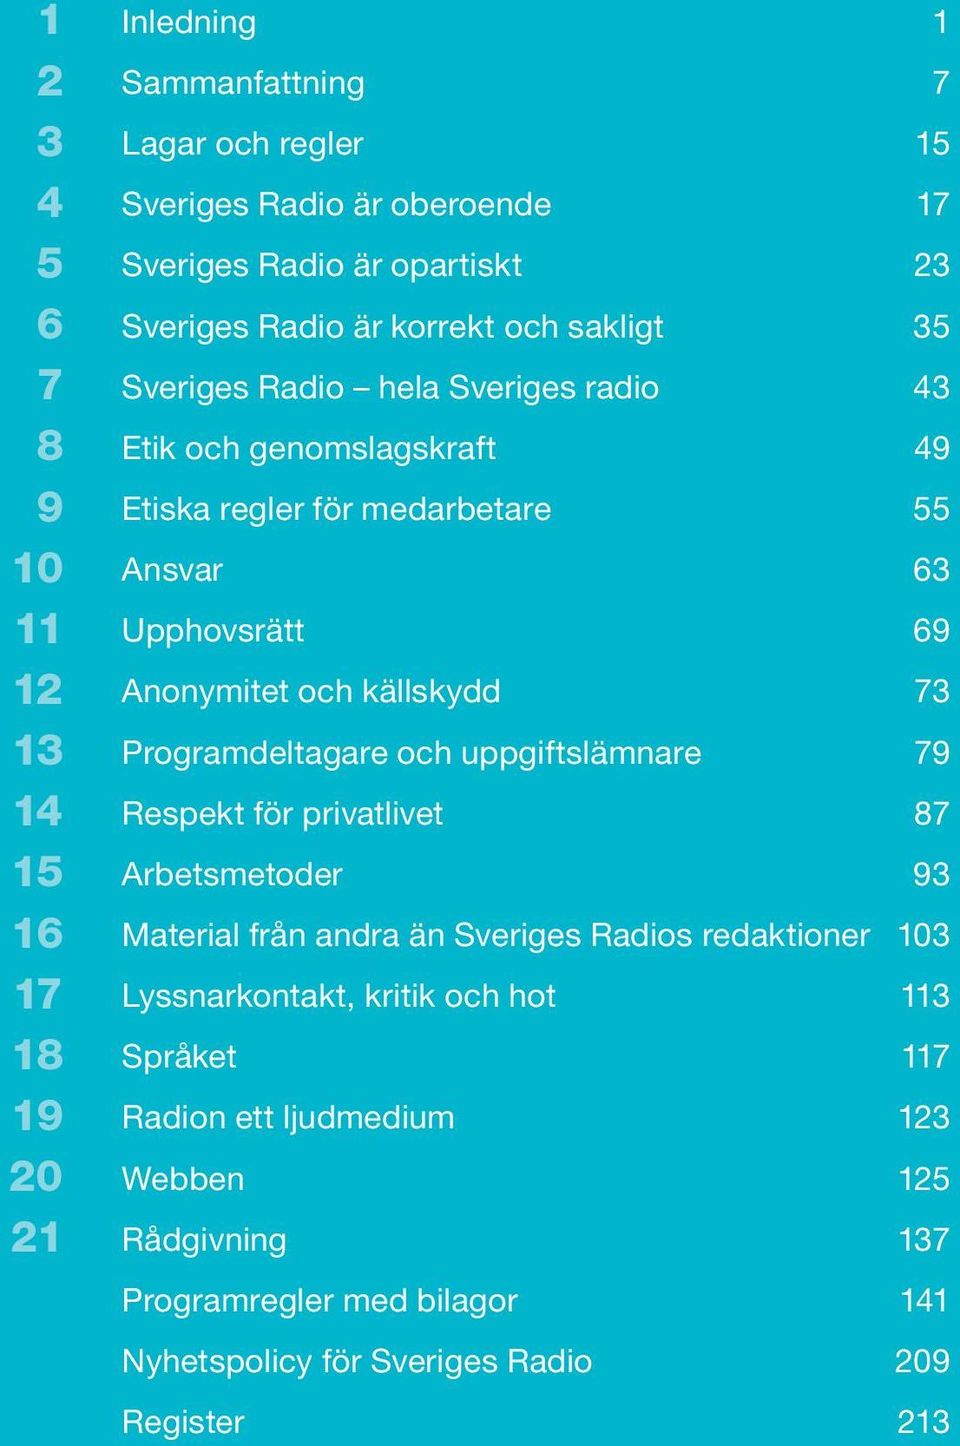 Anonymitet och källskydd 73 Programdeltagare och uppgiftslämnare 79 Respekt för privatlivet 87 Arbetsmetoder 93 Material från andra än Sveriges Radios redaktioner 103